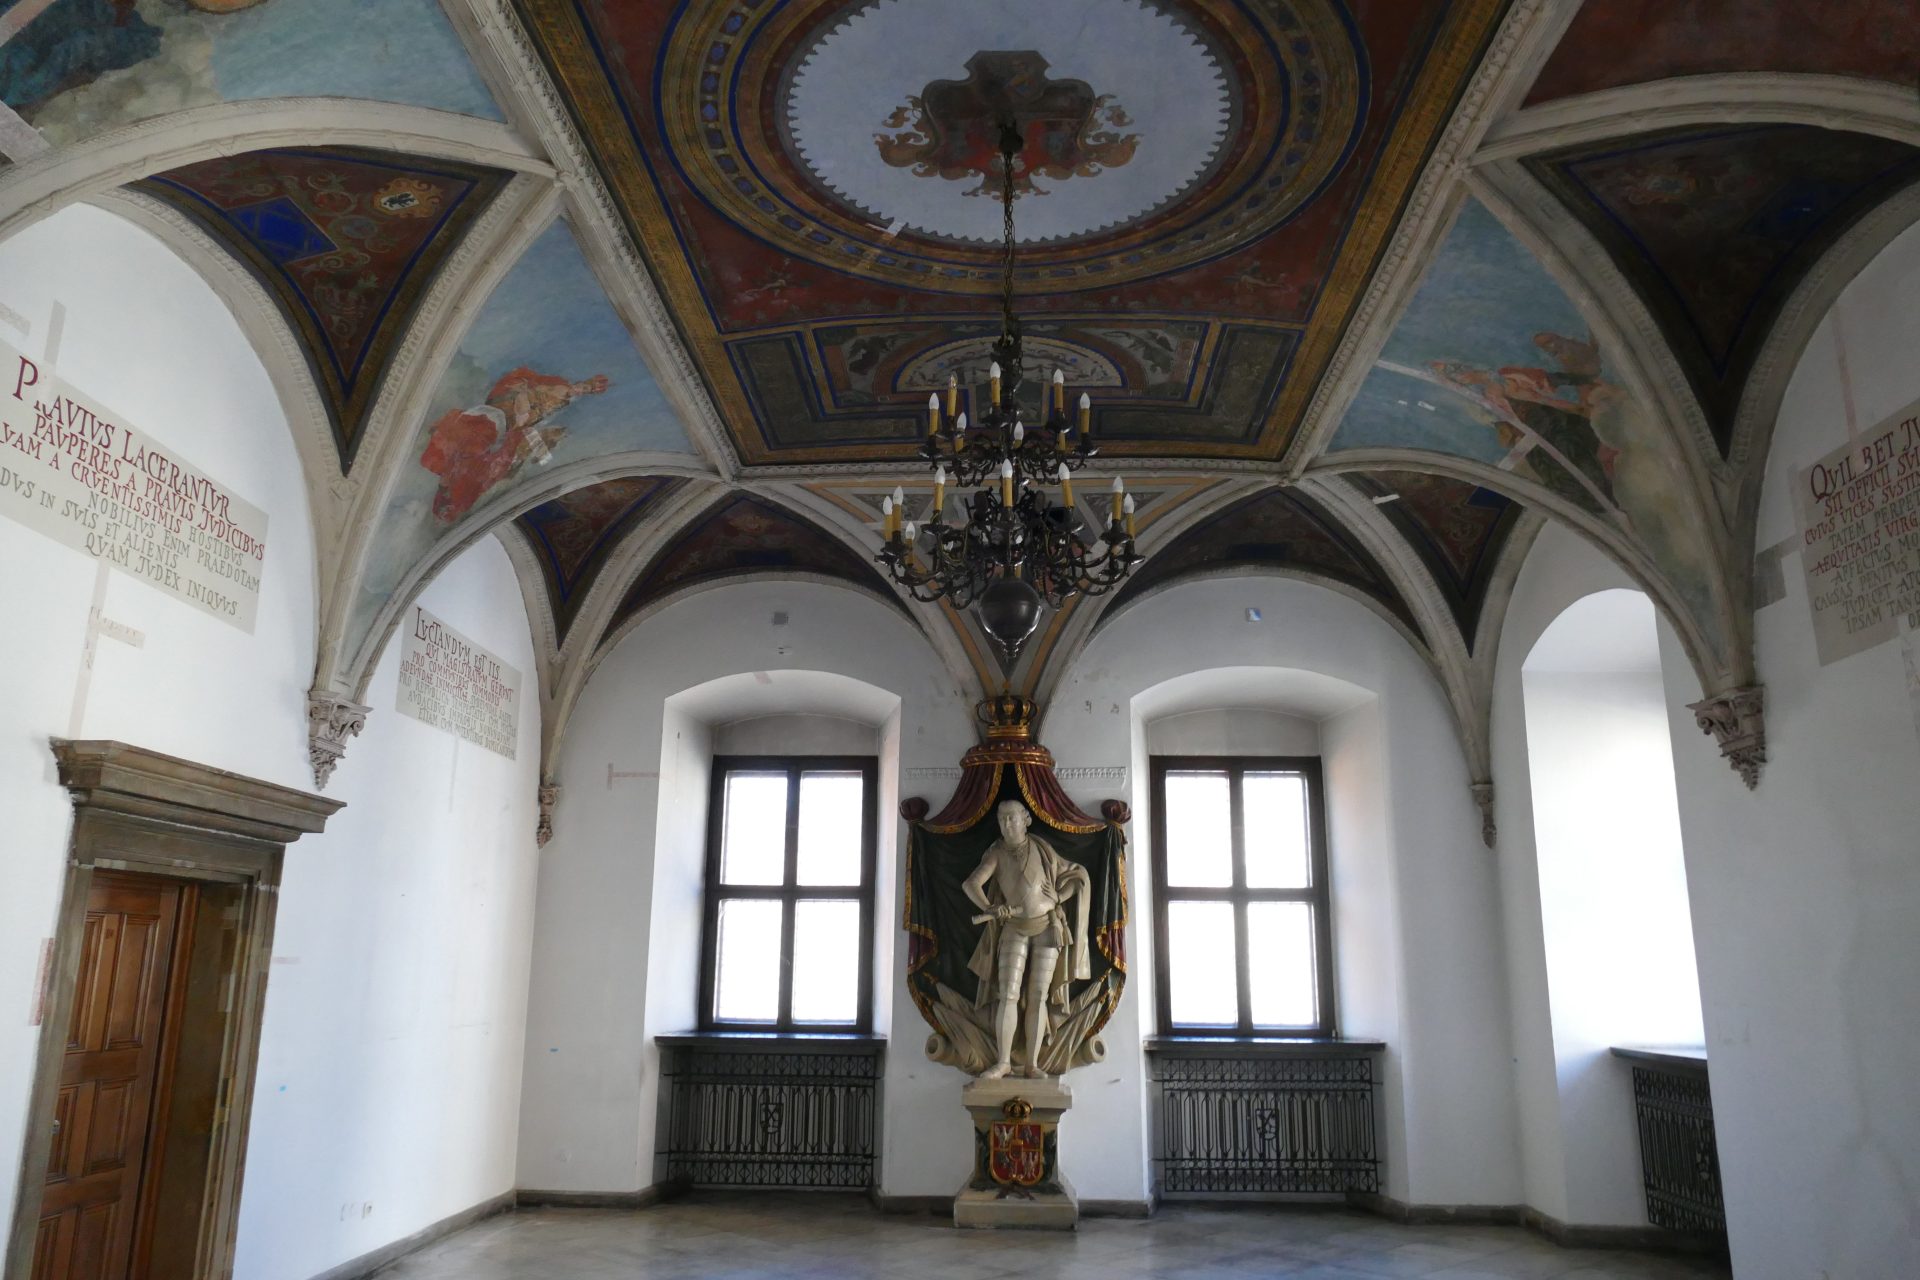 Izba Sądowa ze sklepieniem zdobionym polichromią - na centralnej ścianie izby posąg przedstawiający króla Stanisława Augusta